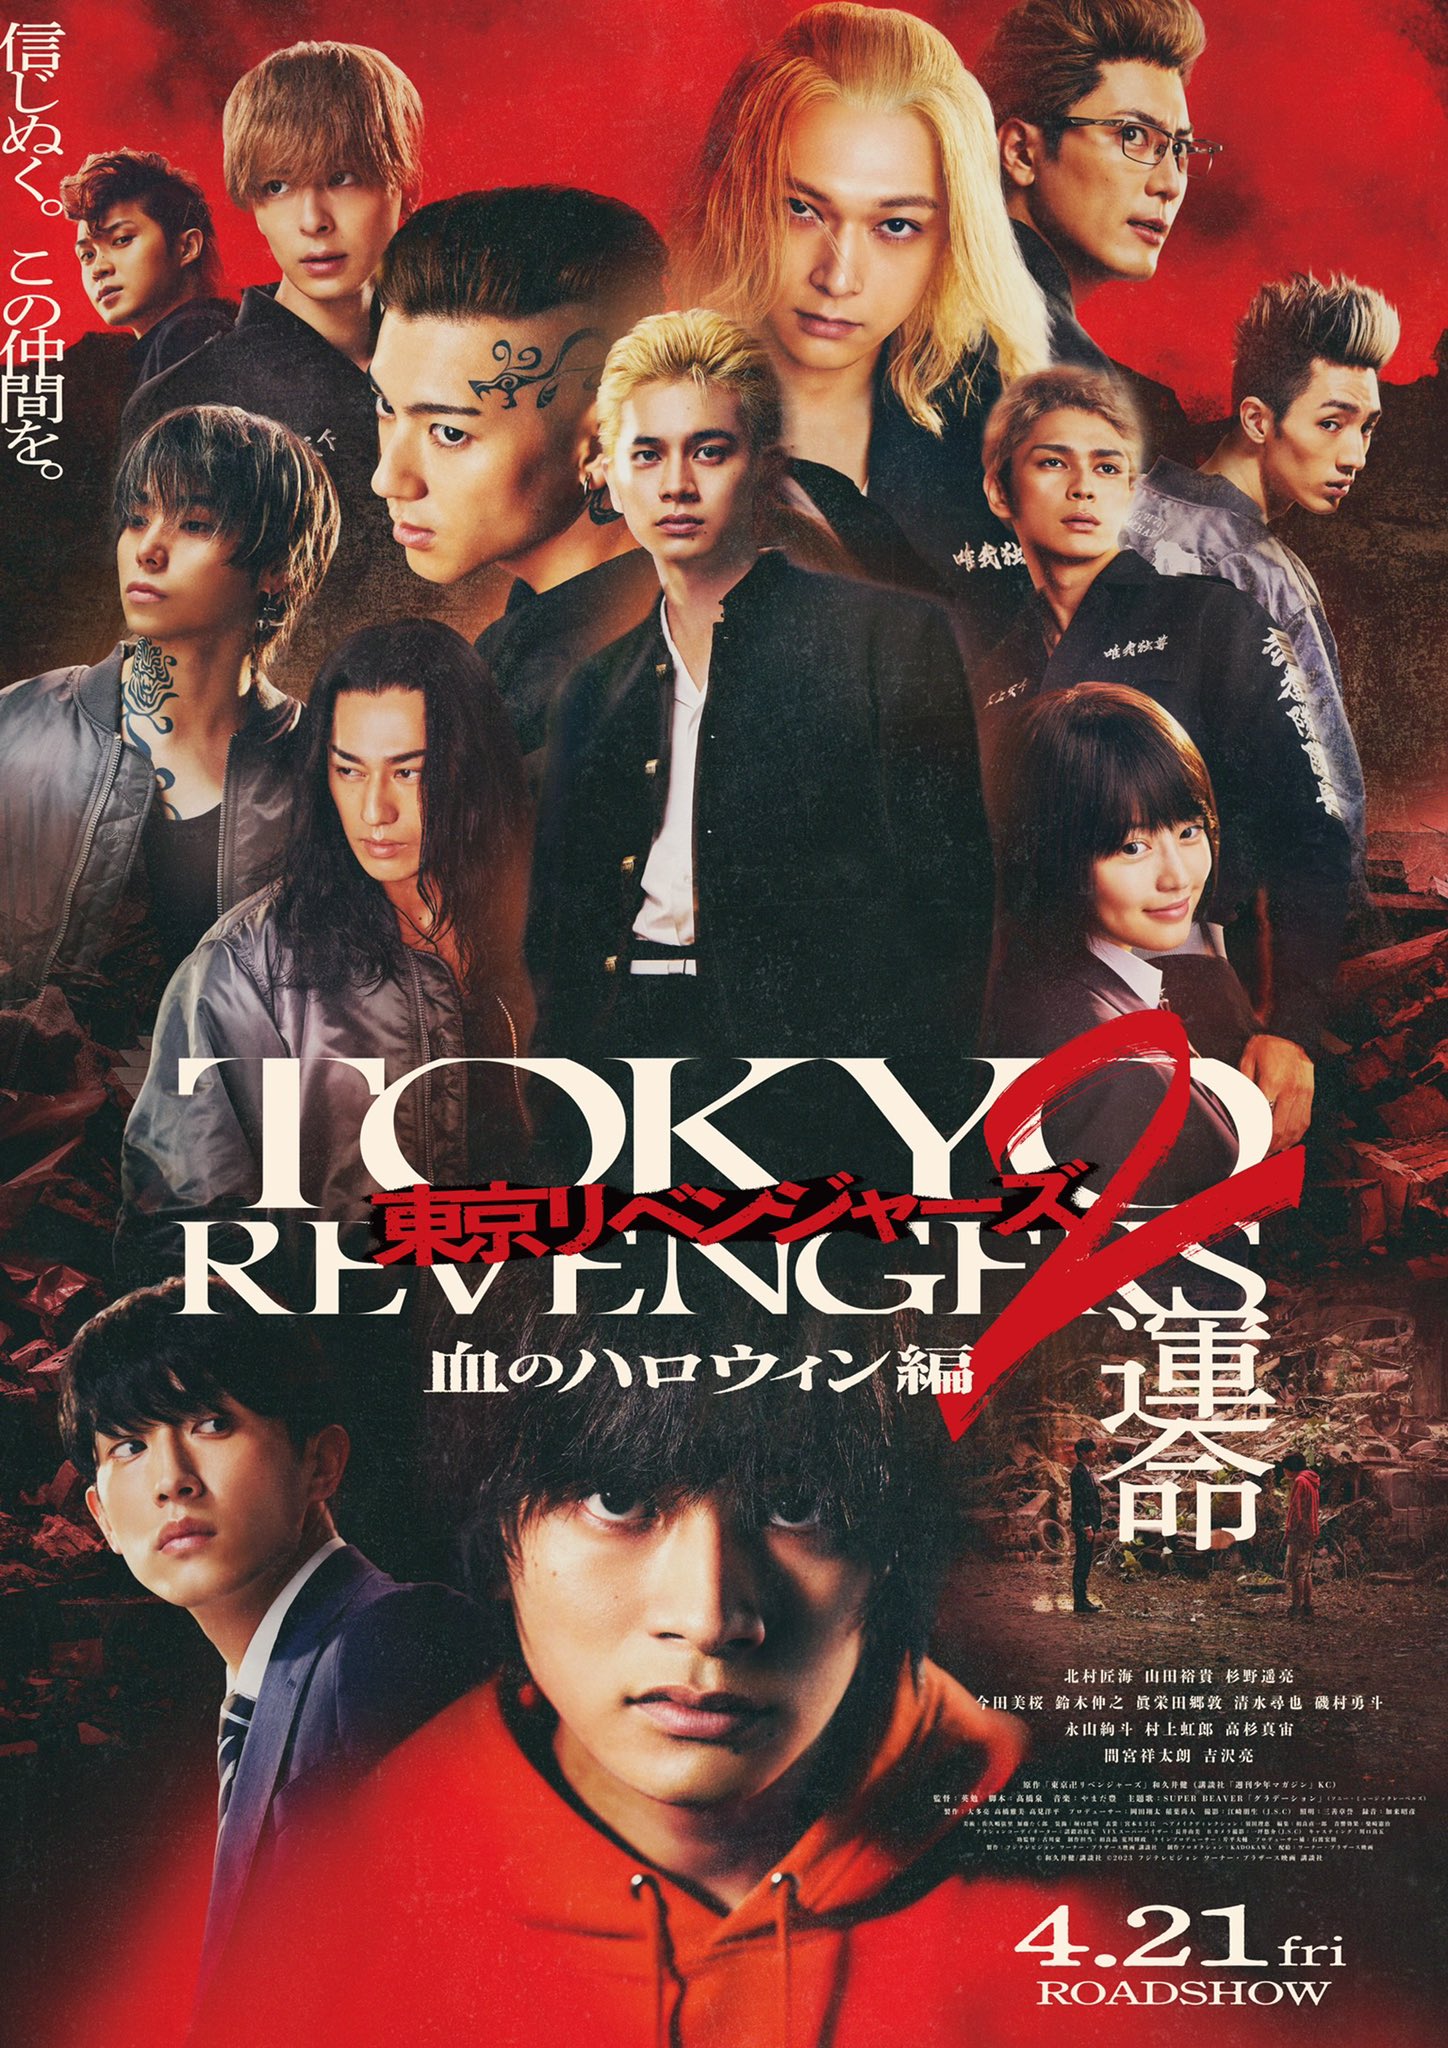 Download JAPANESE movie Tokyo Revenger